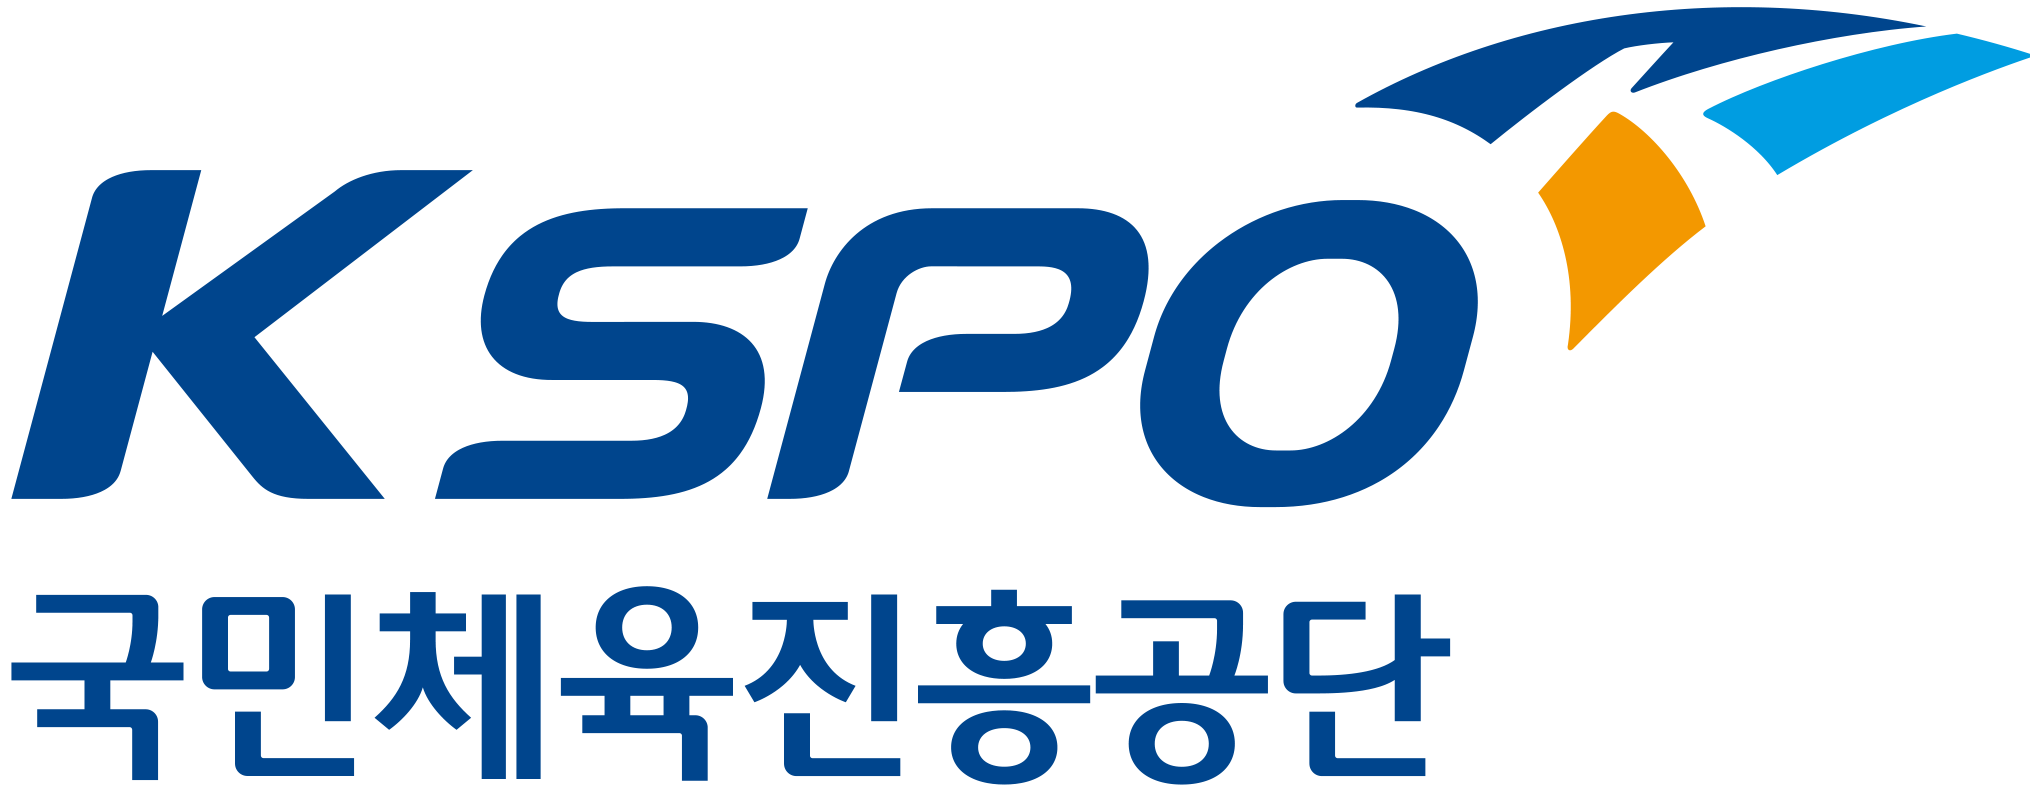 서울올림픽기념국민체육진흥공단